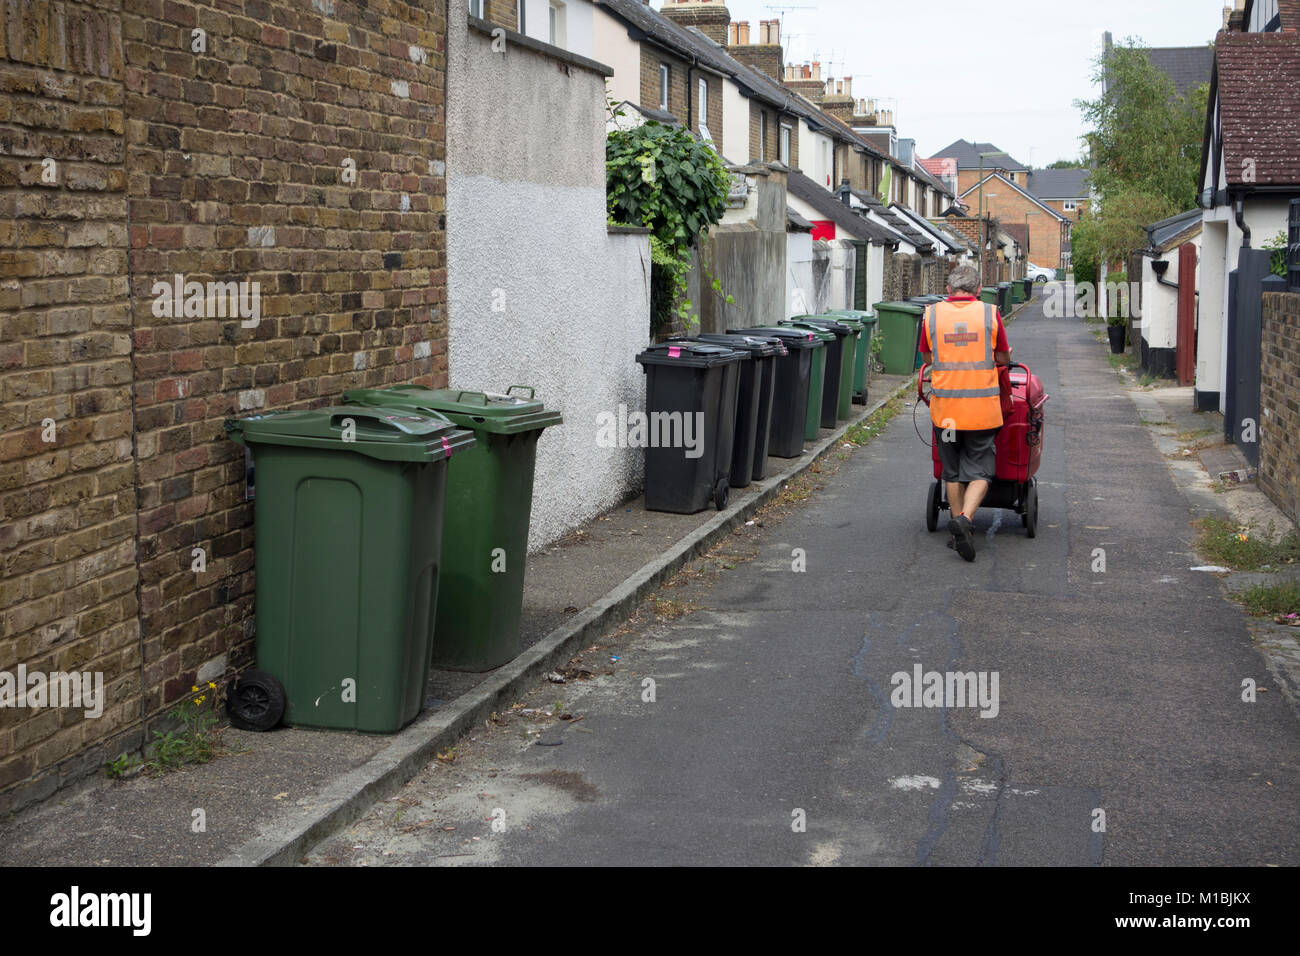 Les bacs de recyclage et ordures poubelles laissés le long de la rue de quartier résidentiel, UK Banque D'Images